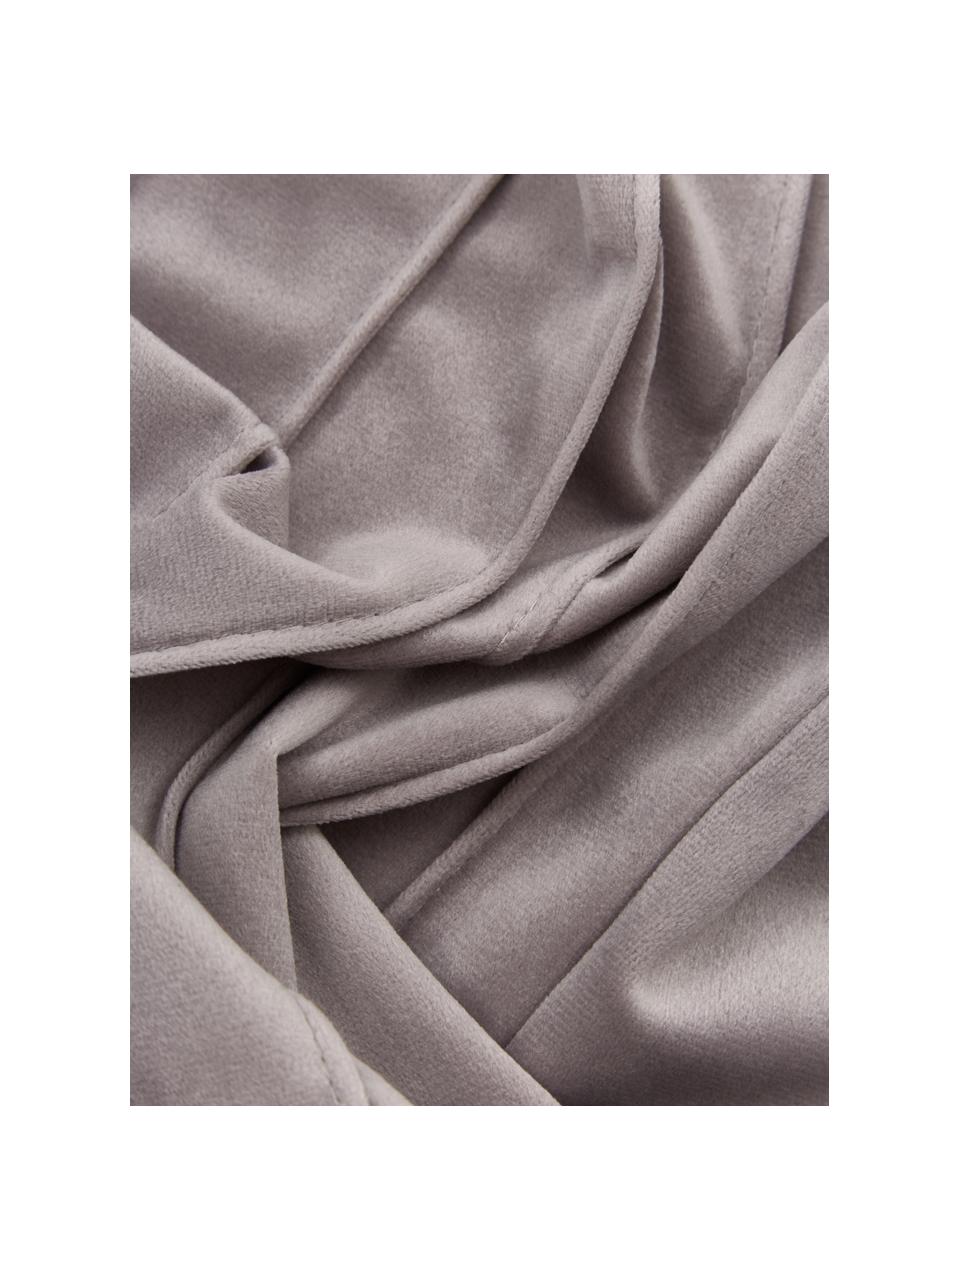 Fluwelen kussenhoes Lola in lichtgrijs met structuurpatroon, Fluweel (100% polyester), Grijs, B 30 x L 50 cm